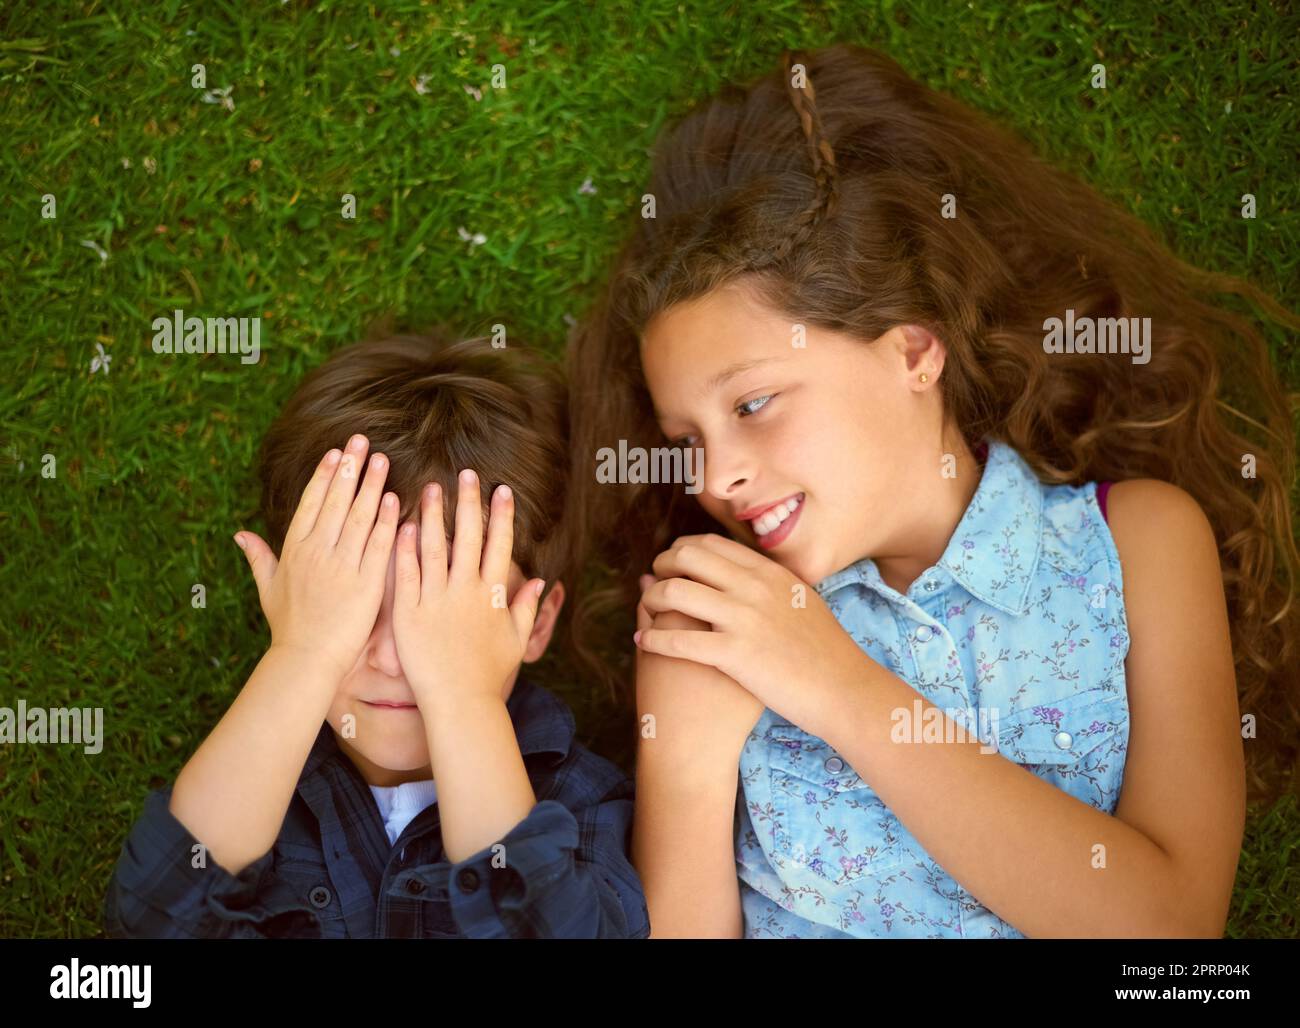 Frères et sœurs font les meilleurs coéquipiers. Photo en grand angle d'un jeune garçon jouant peekaboo avec sa sœur à l'extérieur sur la pelouse. Banque D'Images